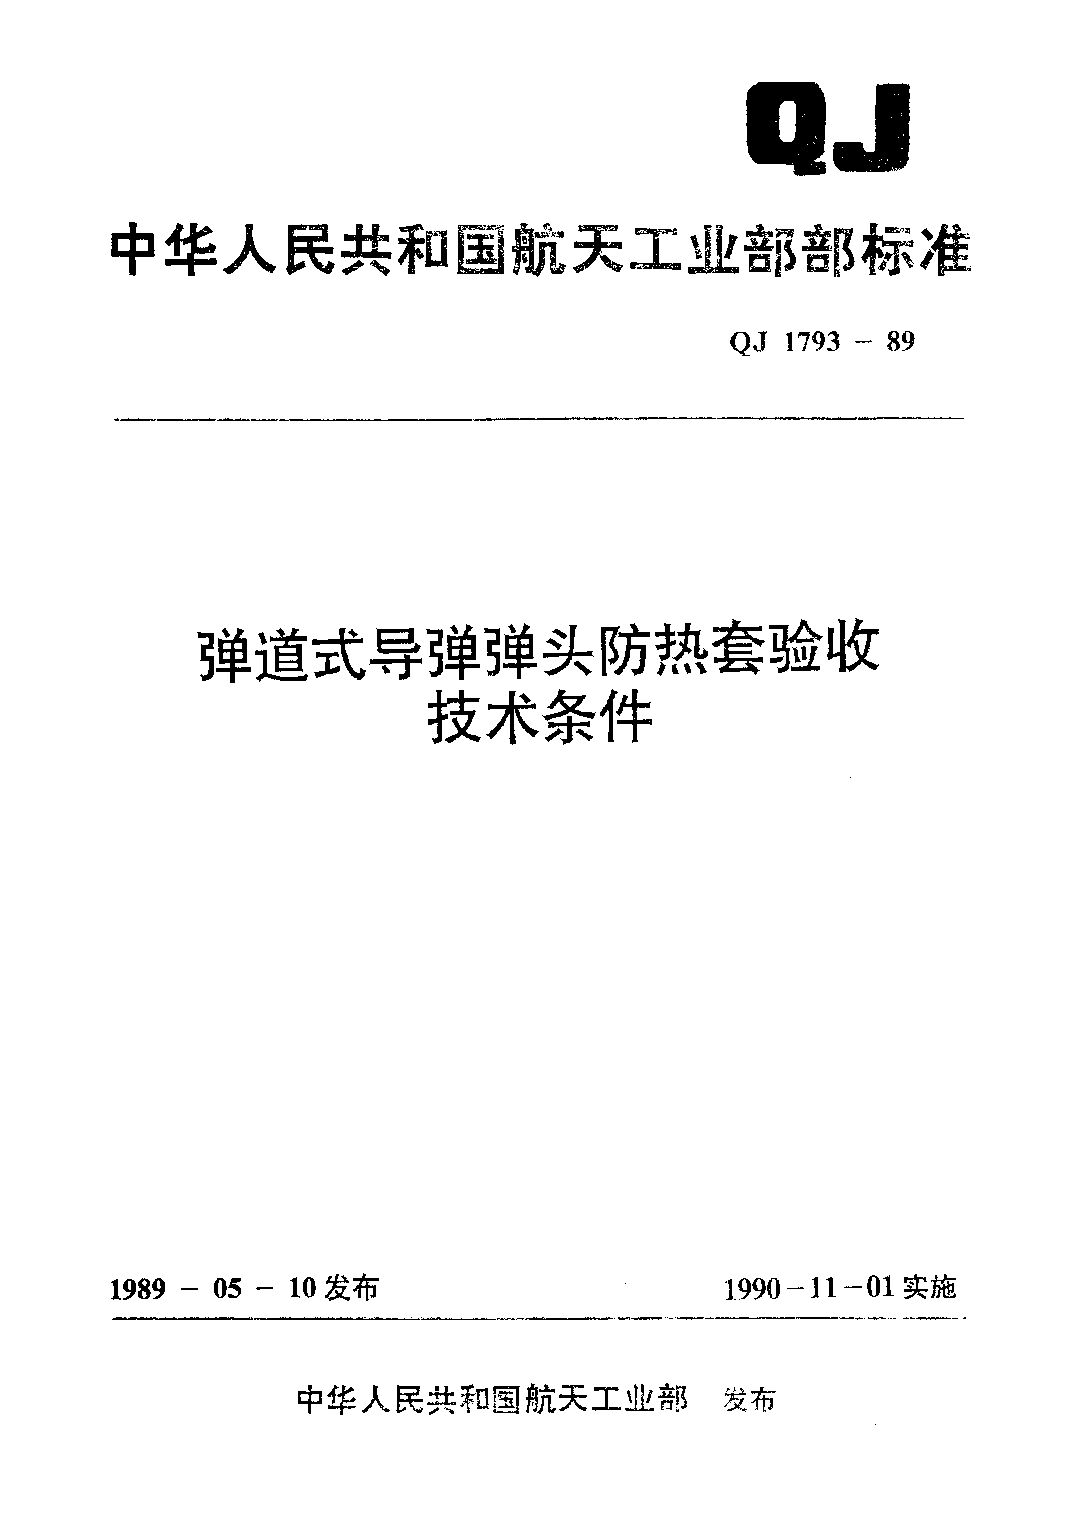 QJ 1793-1989封面图